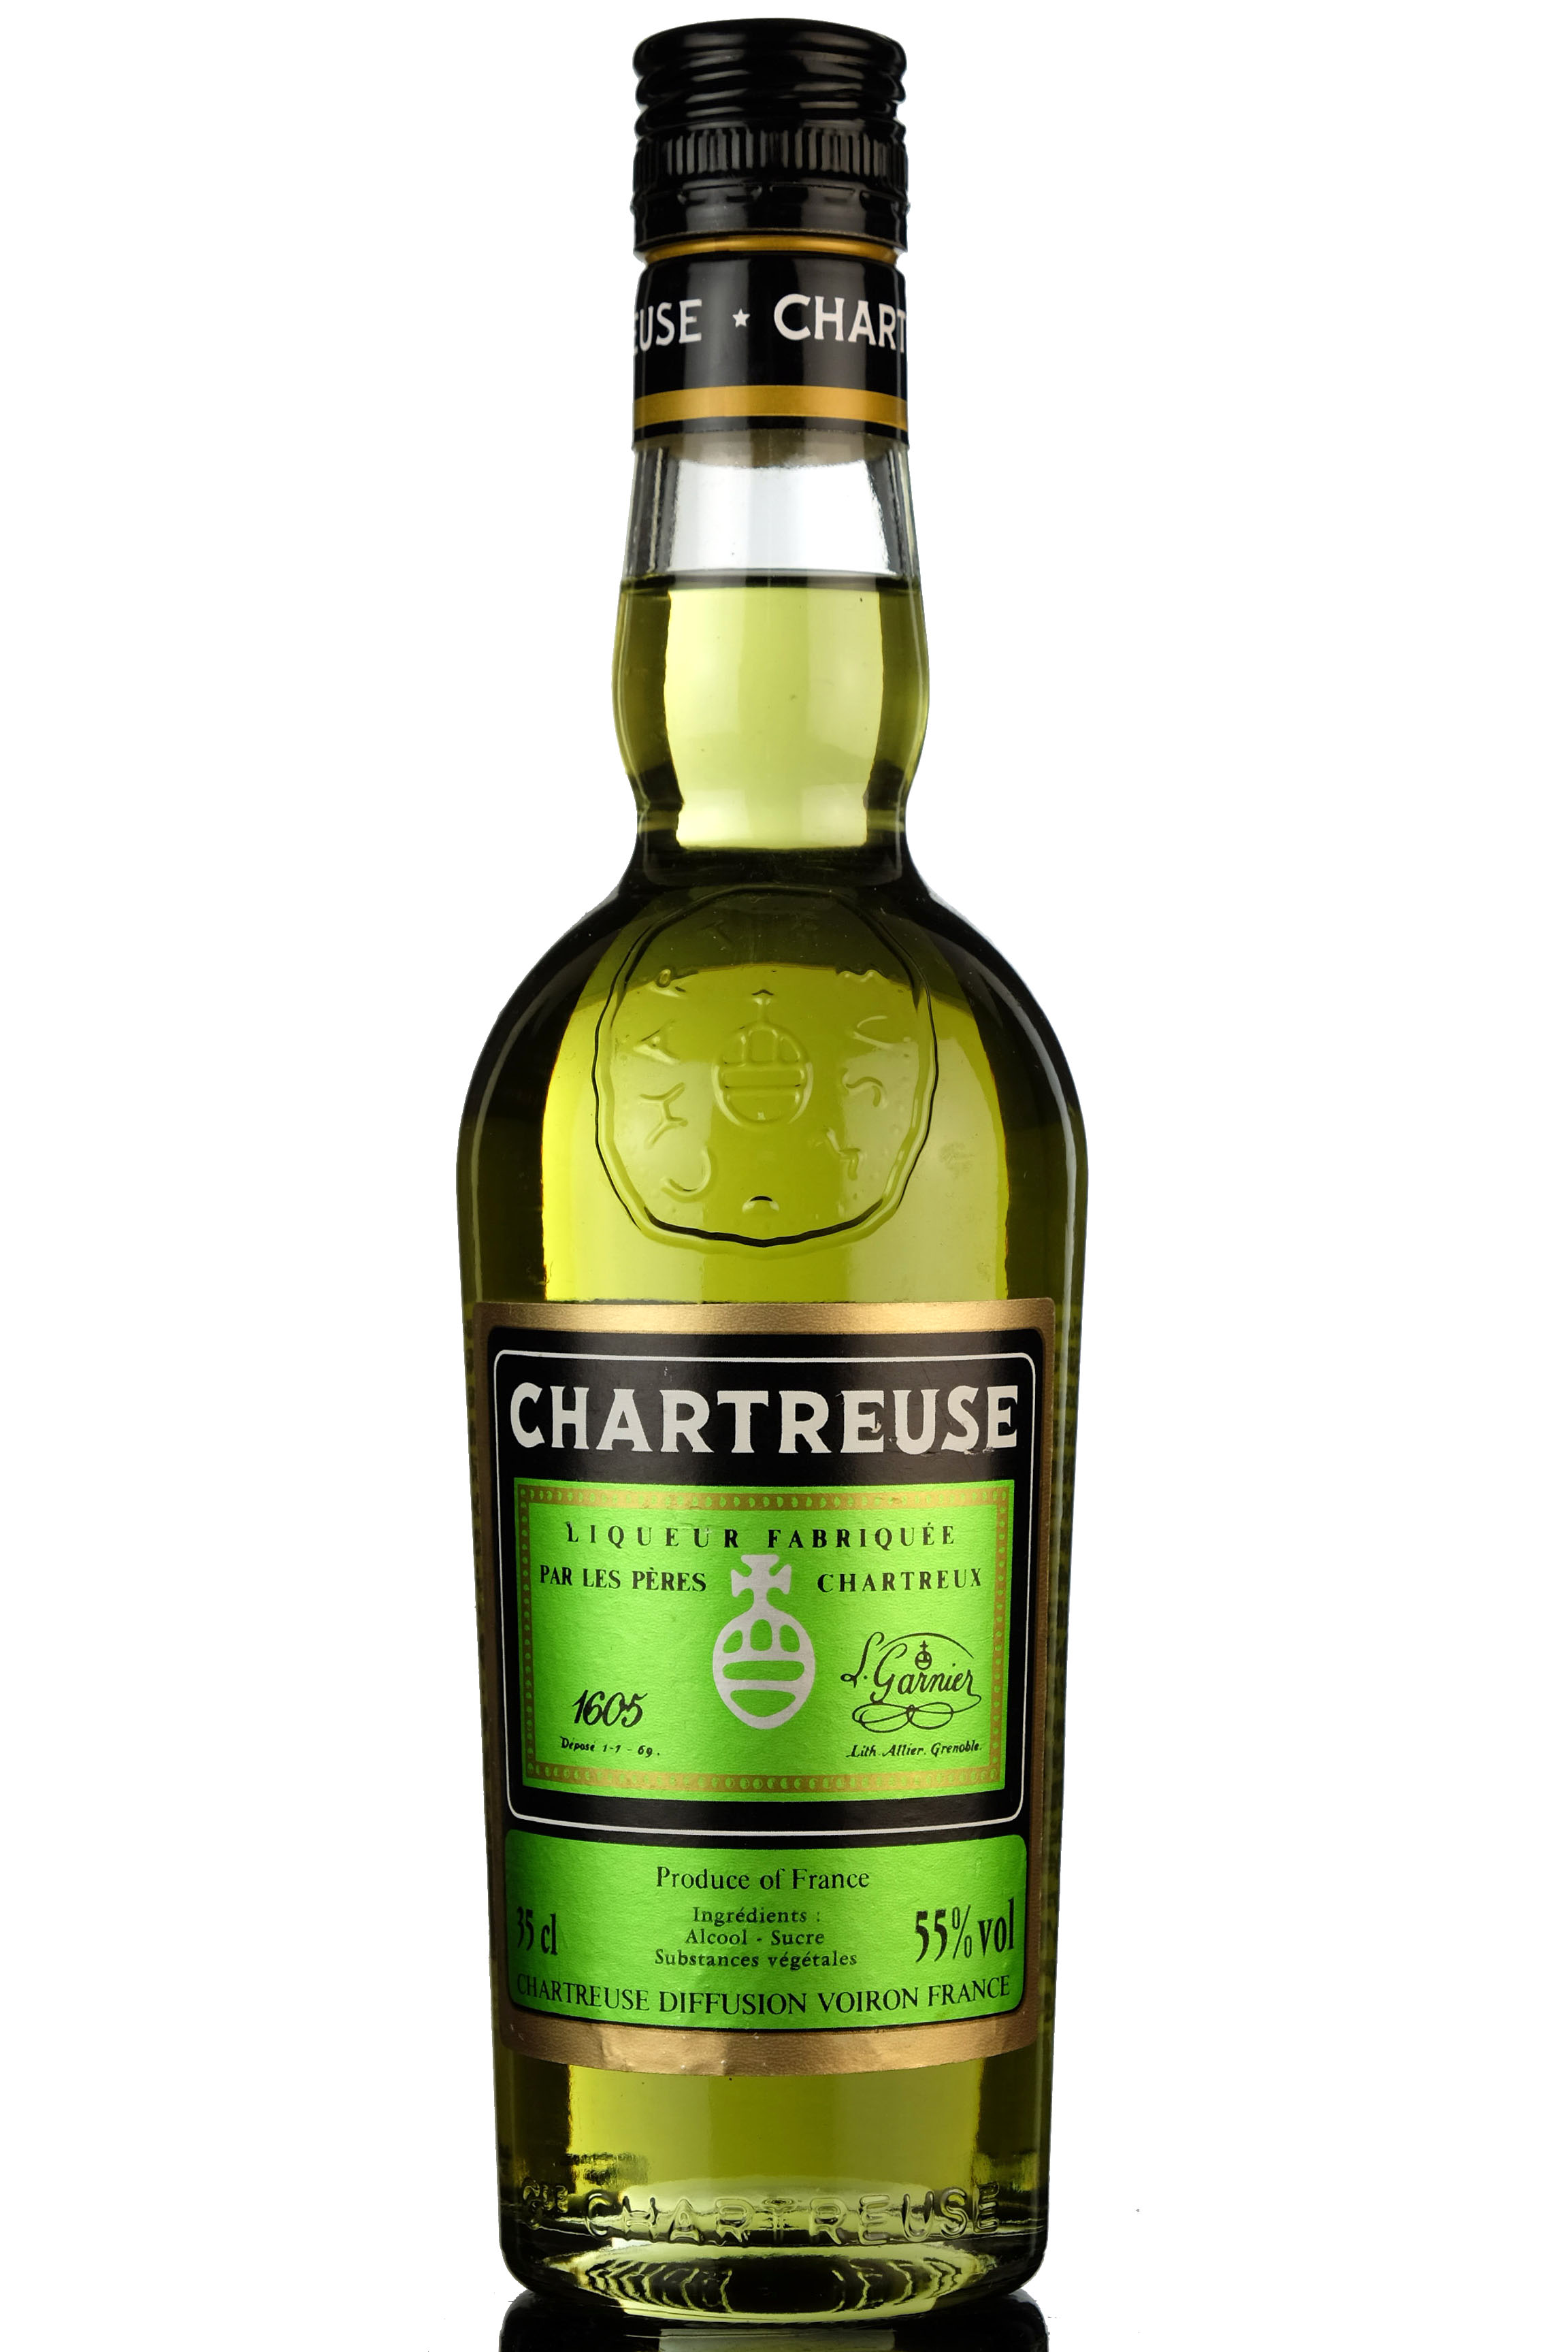 Chartreuse Liqueur - Fabriqvee Par Les Peres Chartrevx - Half Bottle